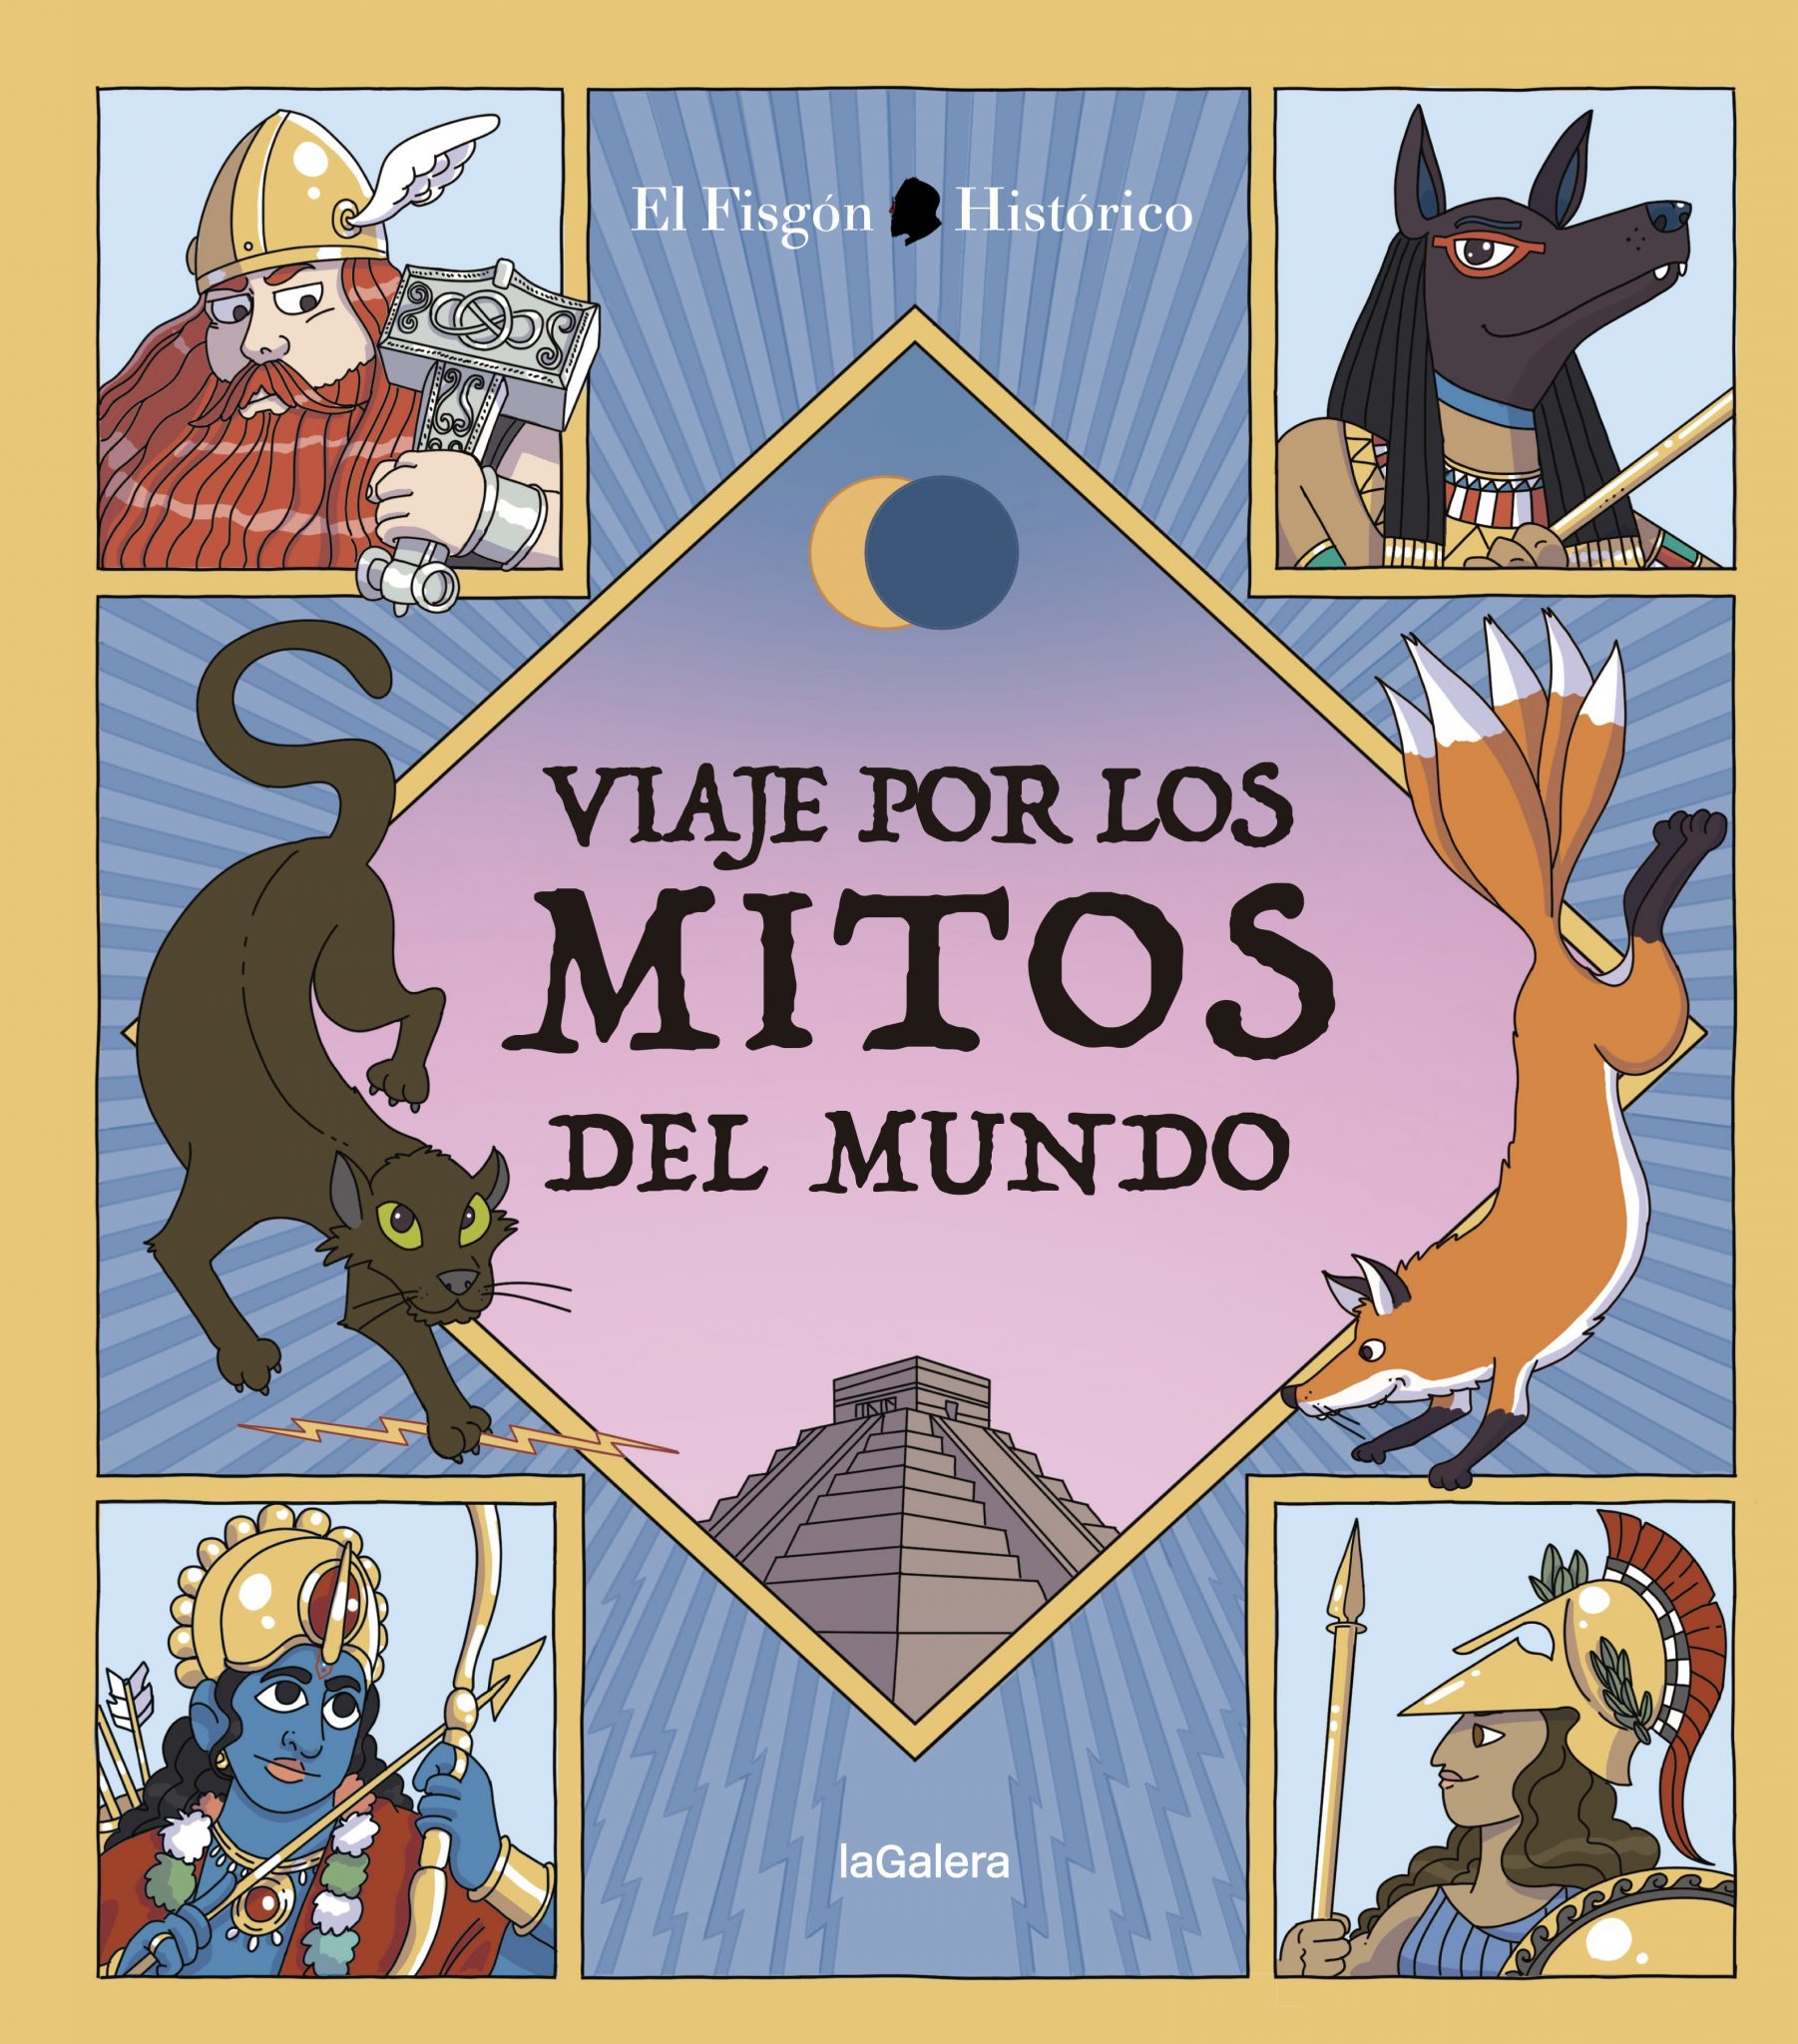 "Mitos del mundo hispanohablante"